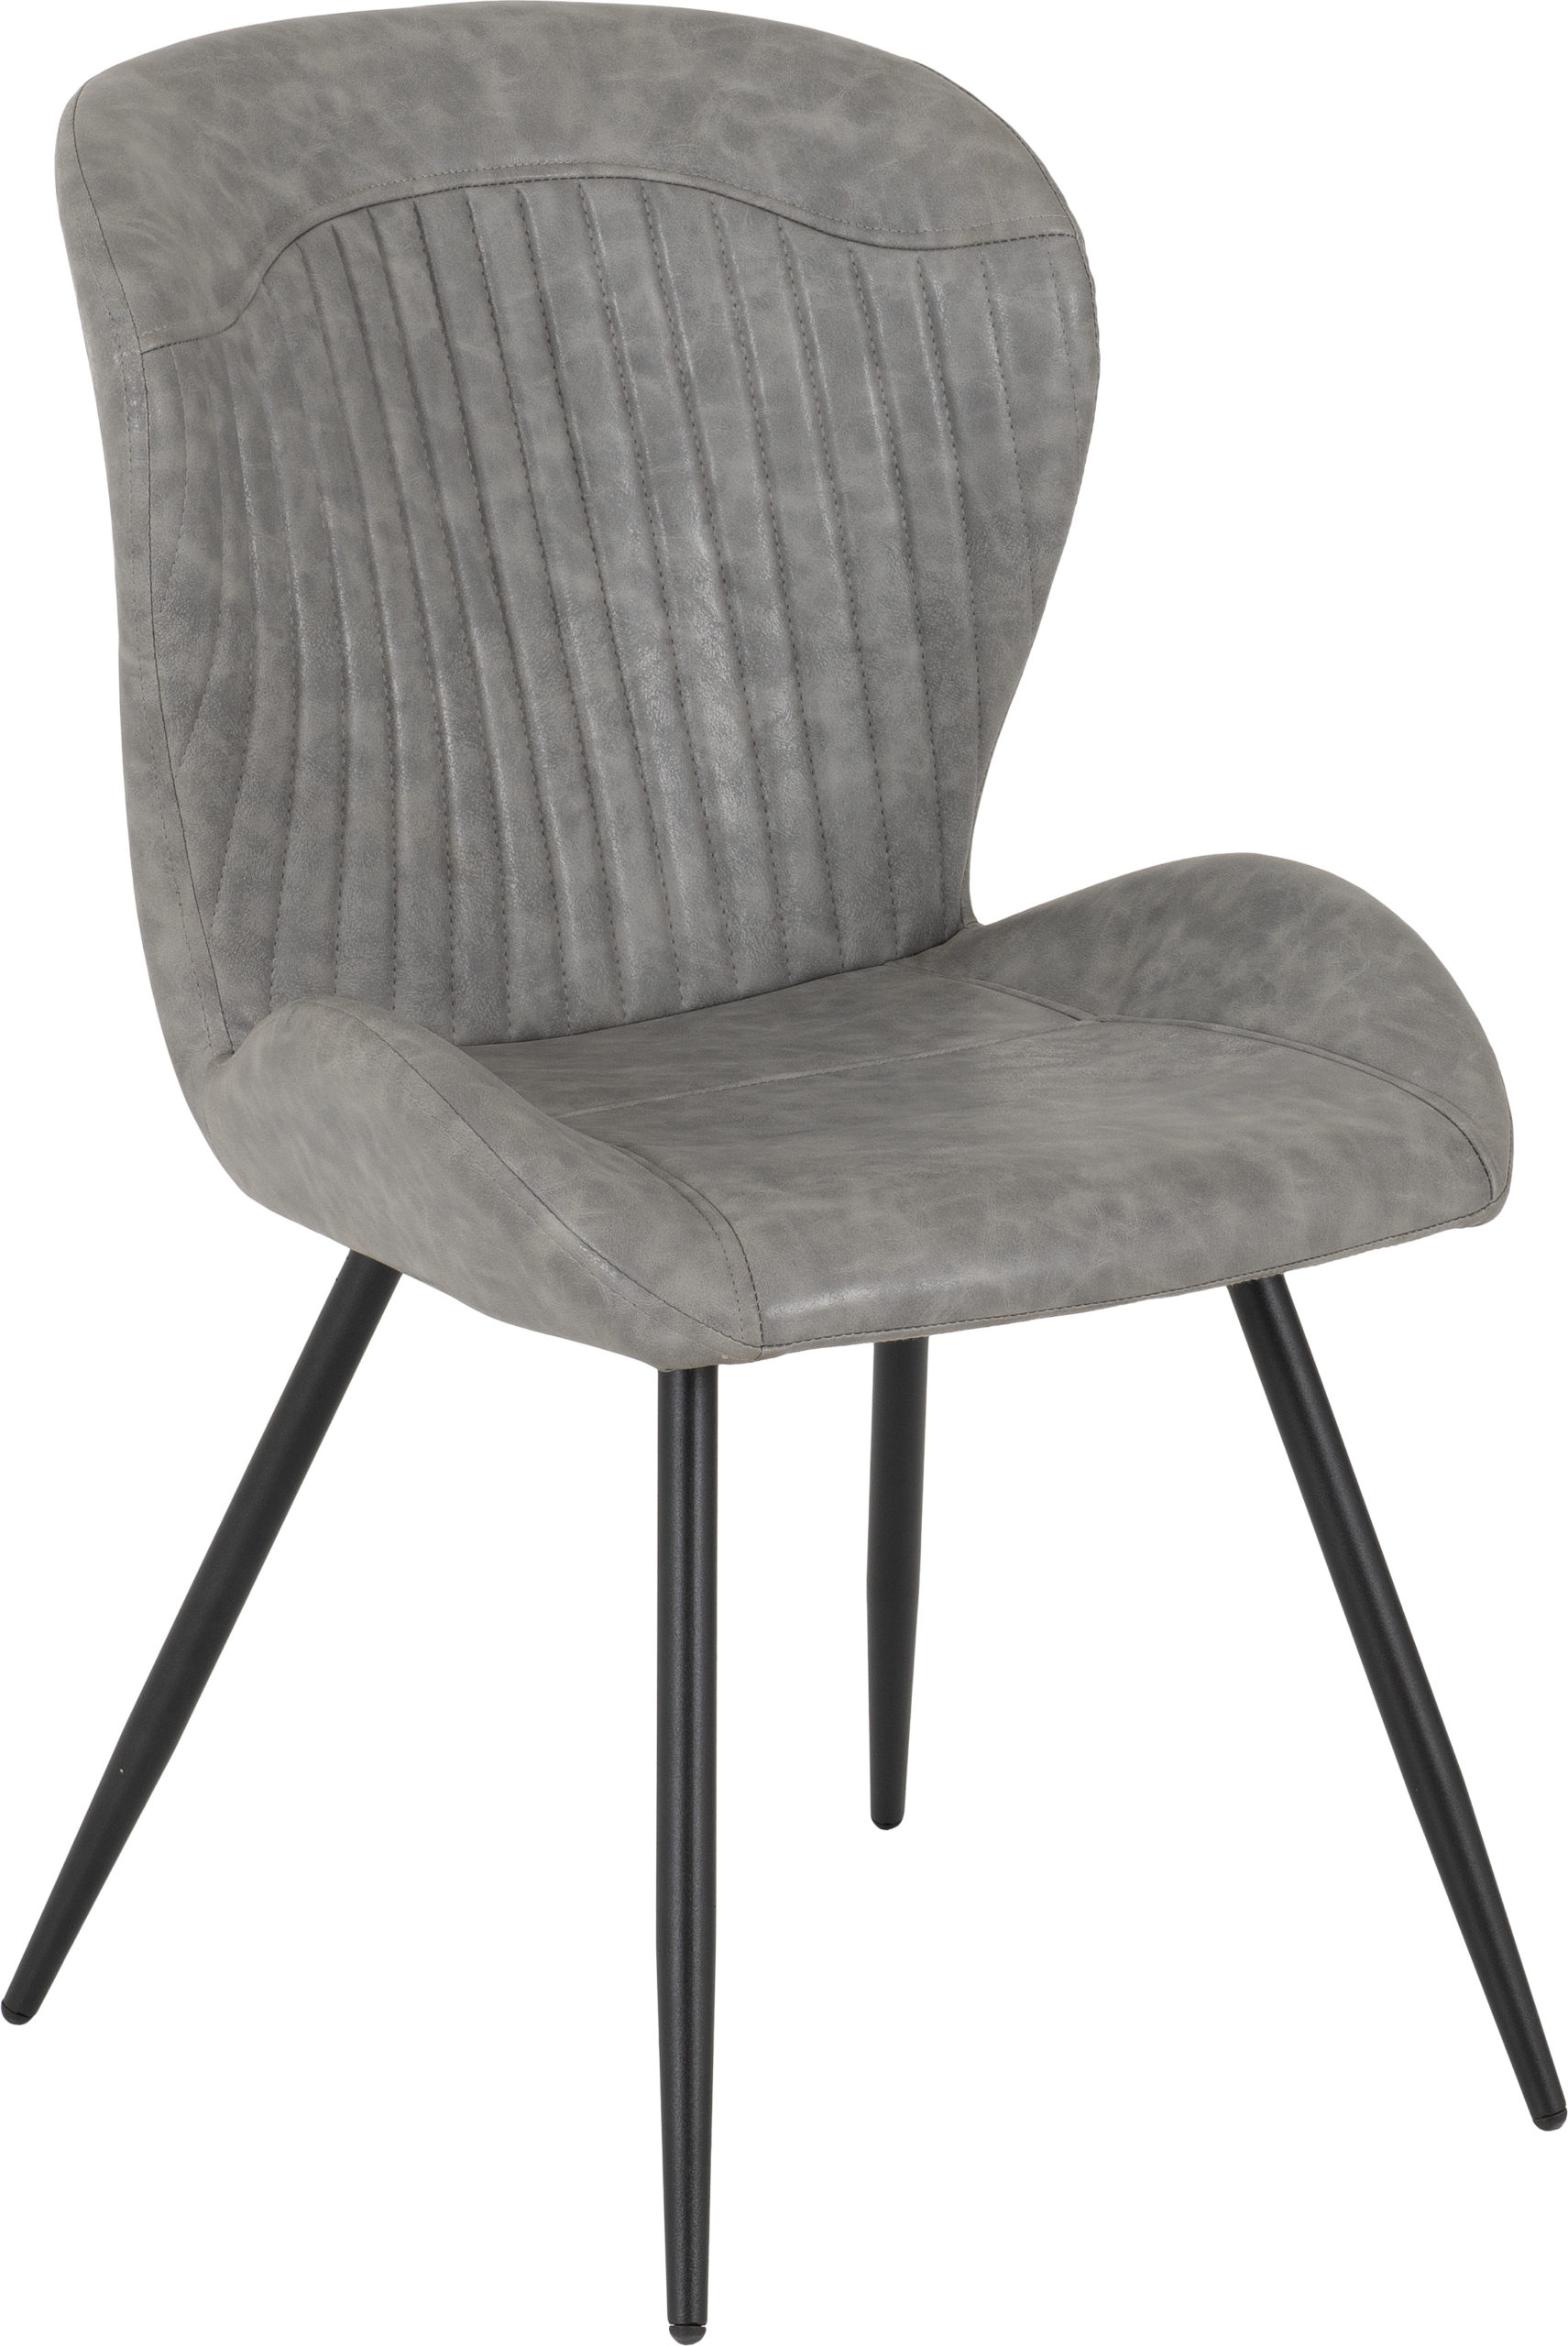 400-402-127 - Quebec Chair - Grey Faux Leather - Seconique